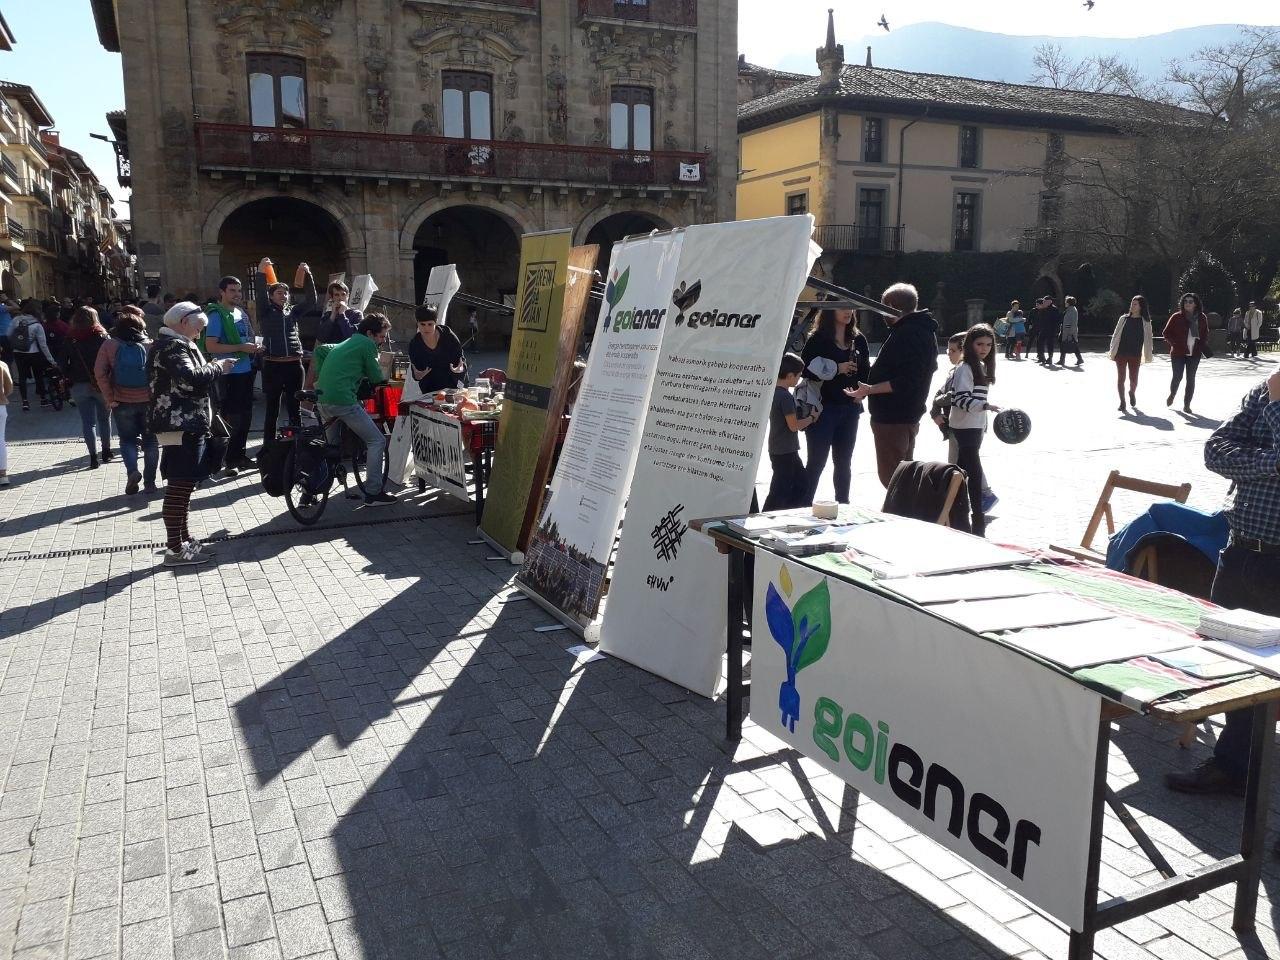 Goiener participa en las actividades organizadas por EHUN en Oñati durante el mes de febrero